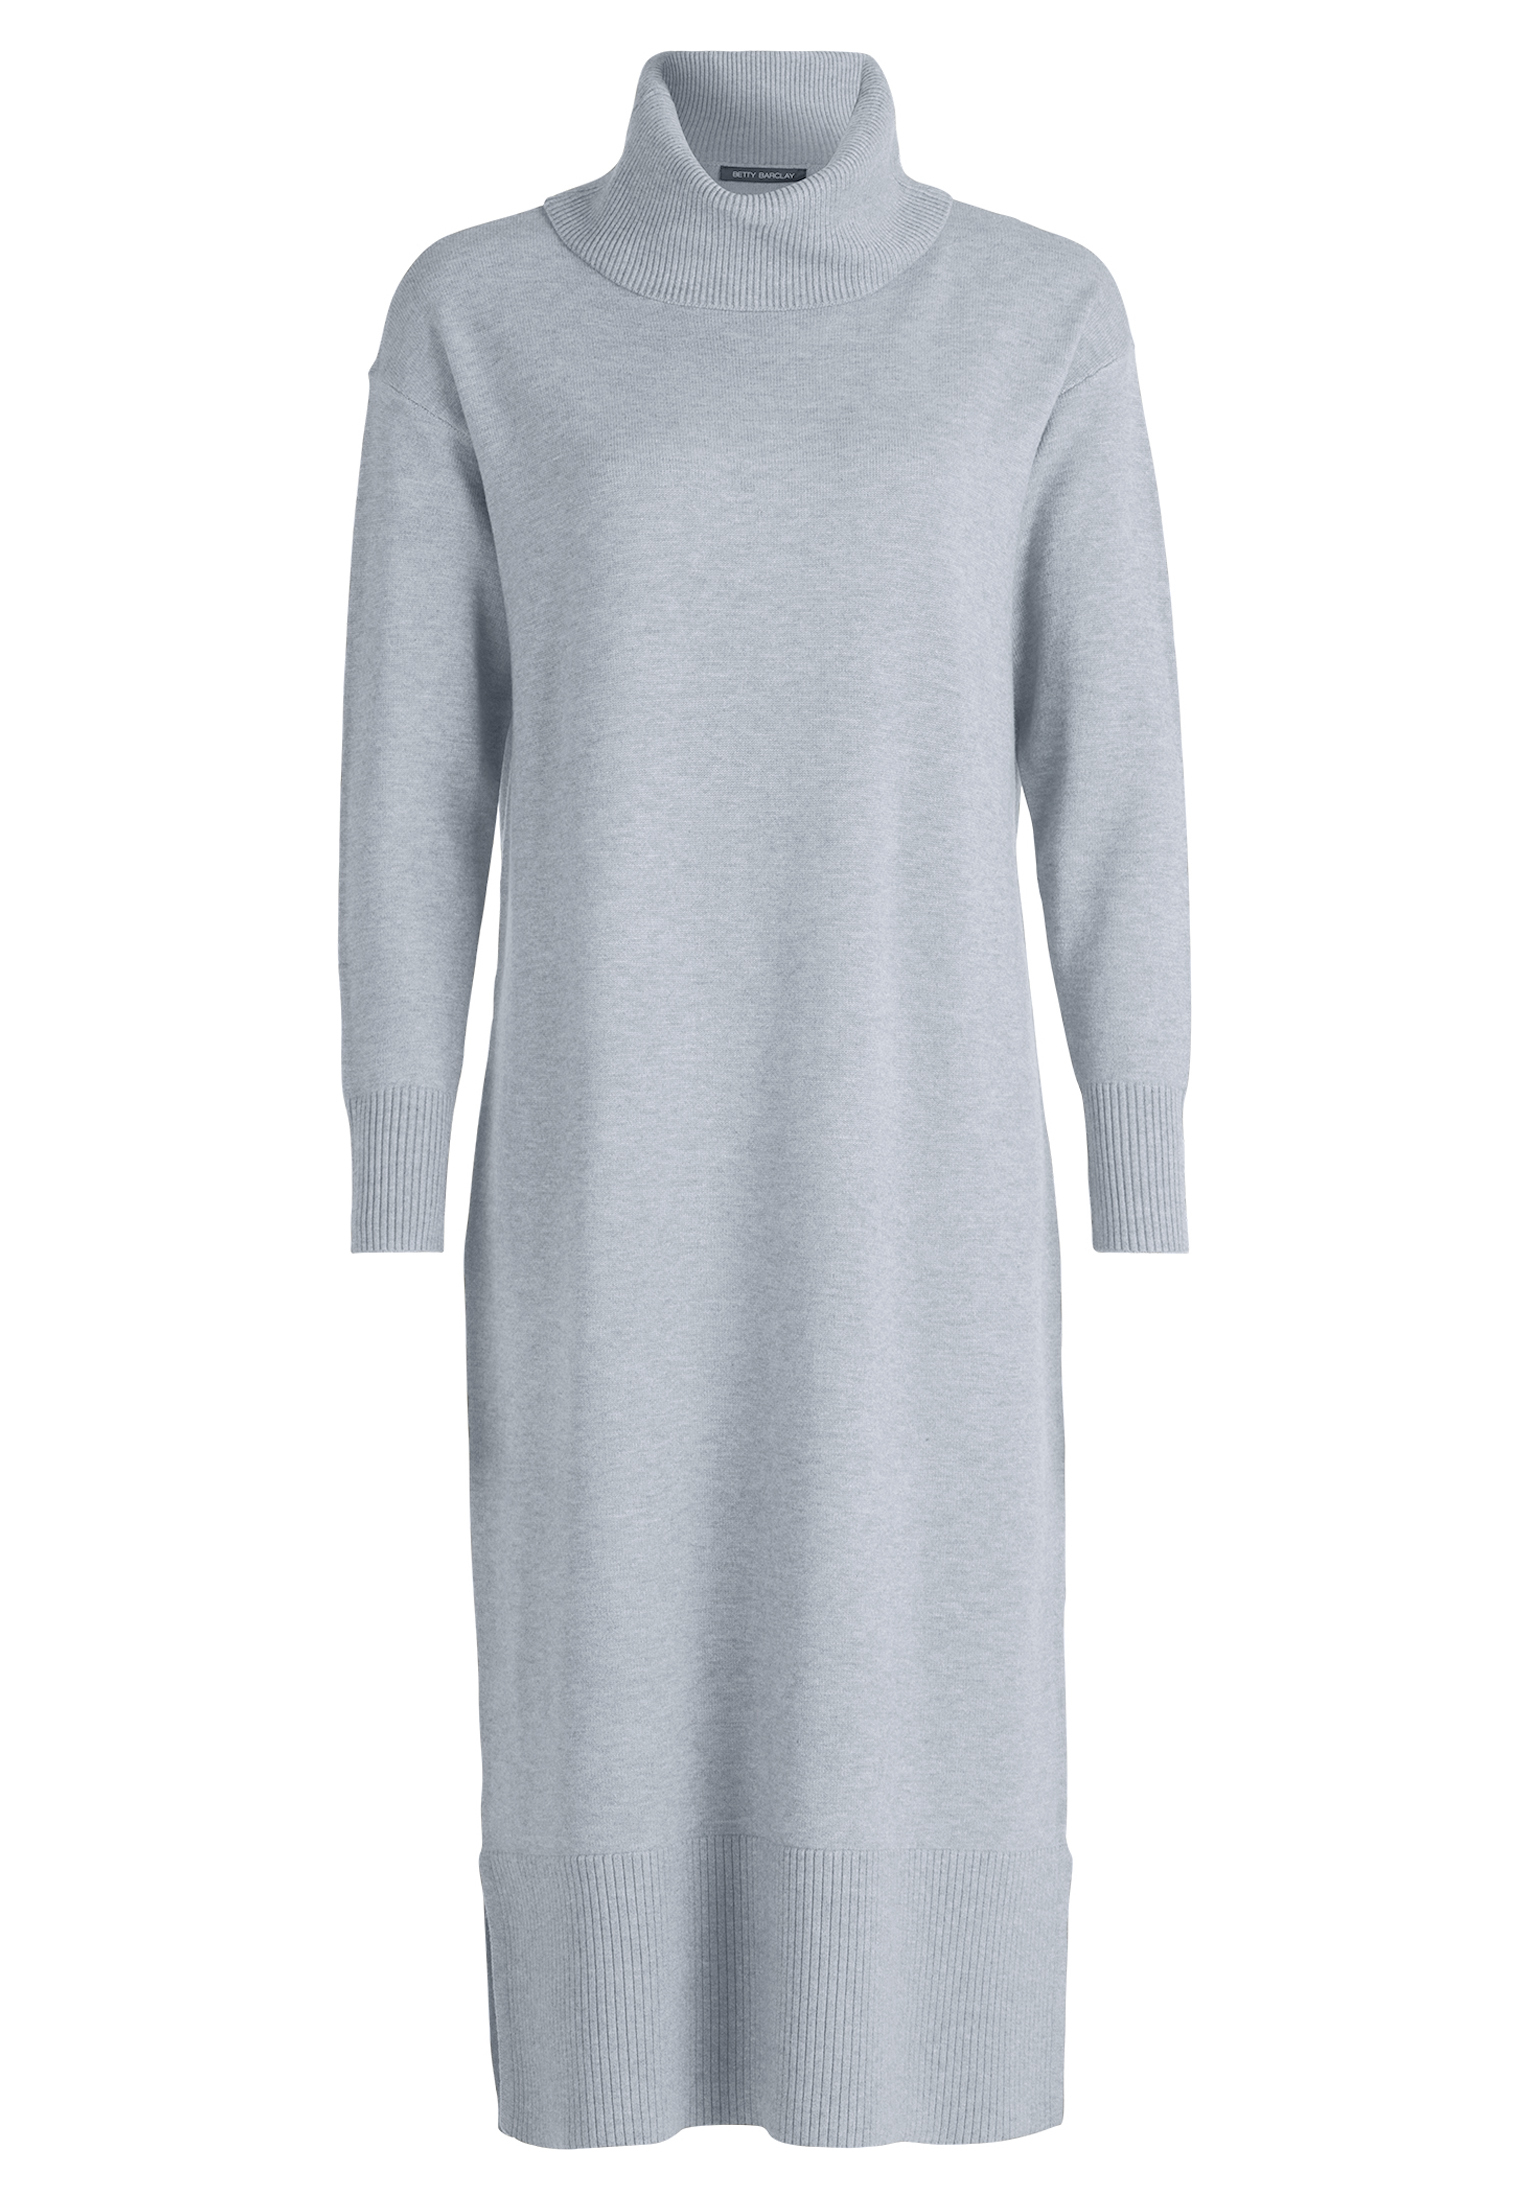 Платье Betty Barclay Strick mit hohem Kragen, серый меланж